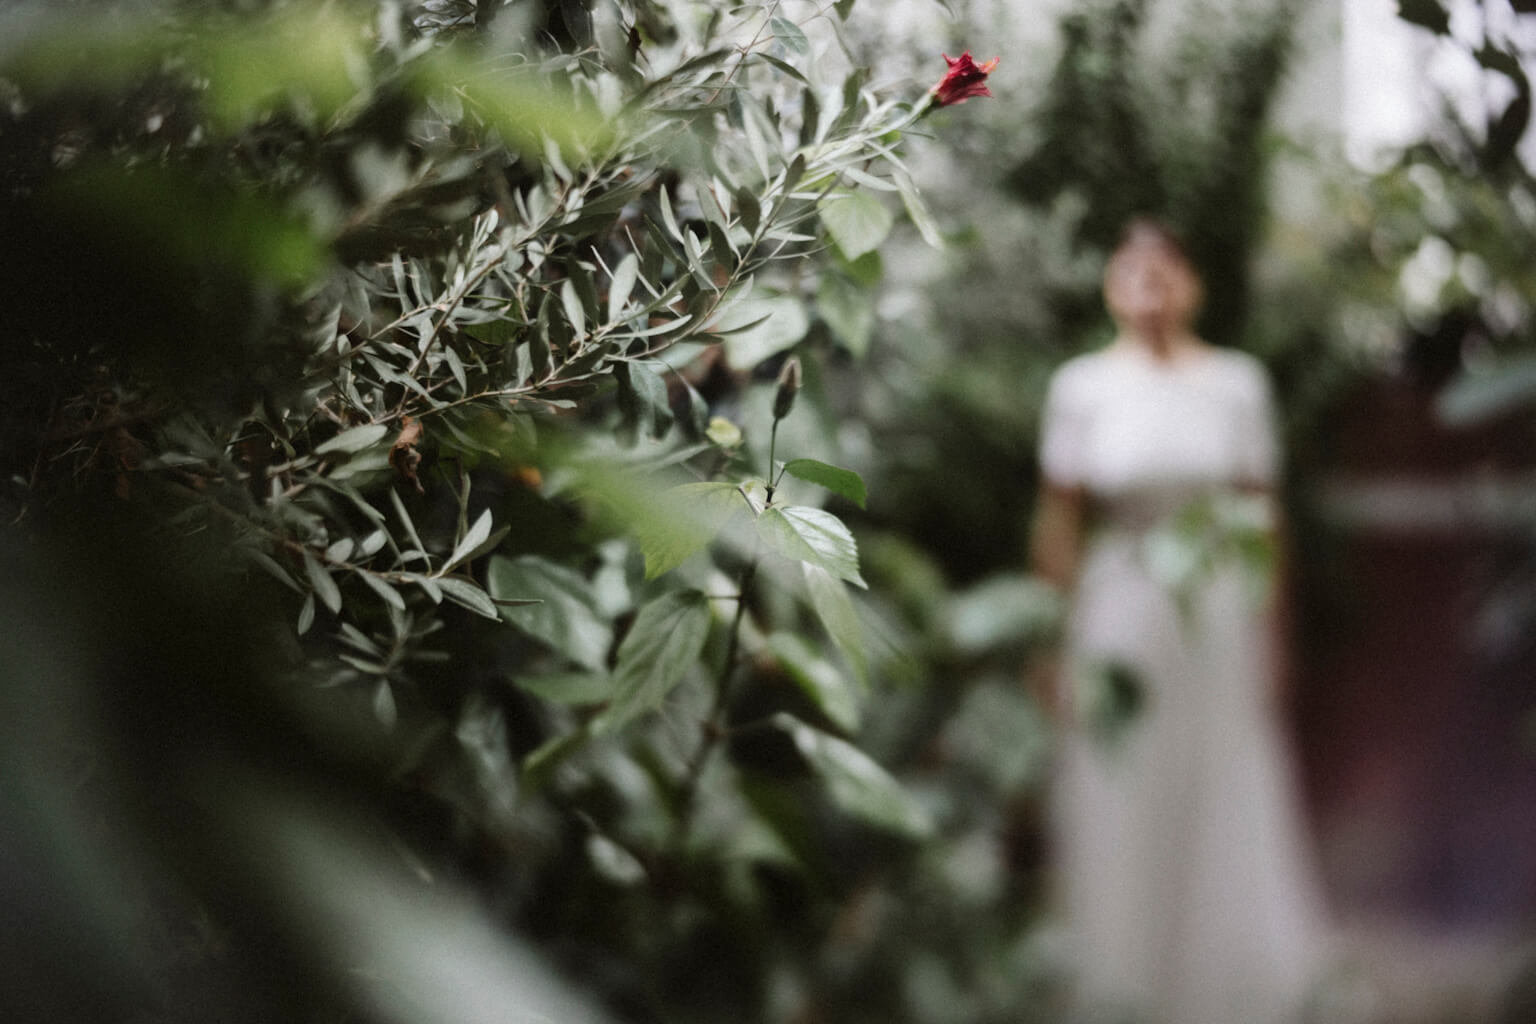 Balint Sara Botanica menyasszonyi ruha kollekcio 2024 Fresia esküvői ruha uszályos, selyem muszlin szoknyaval